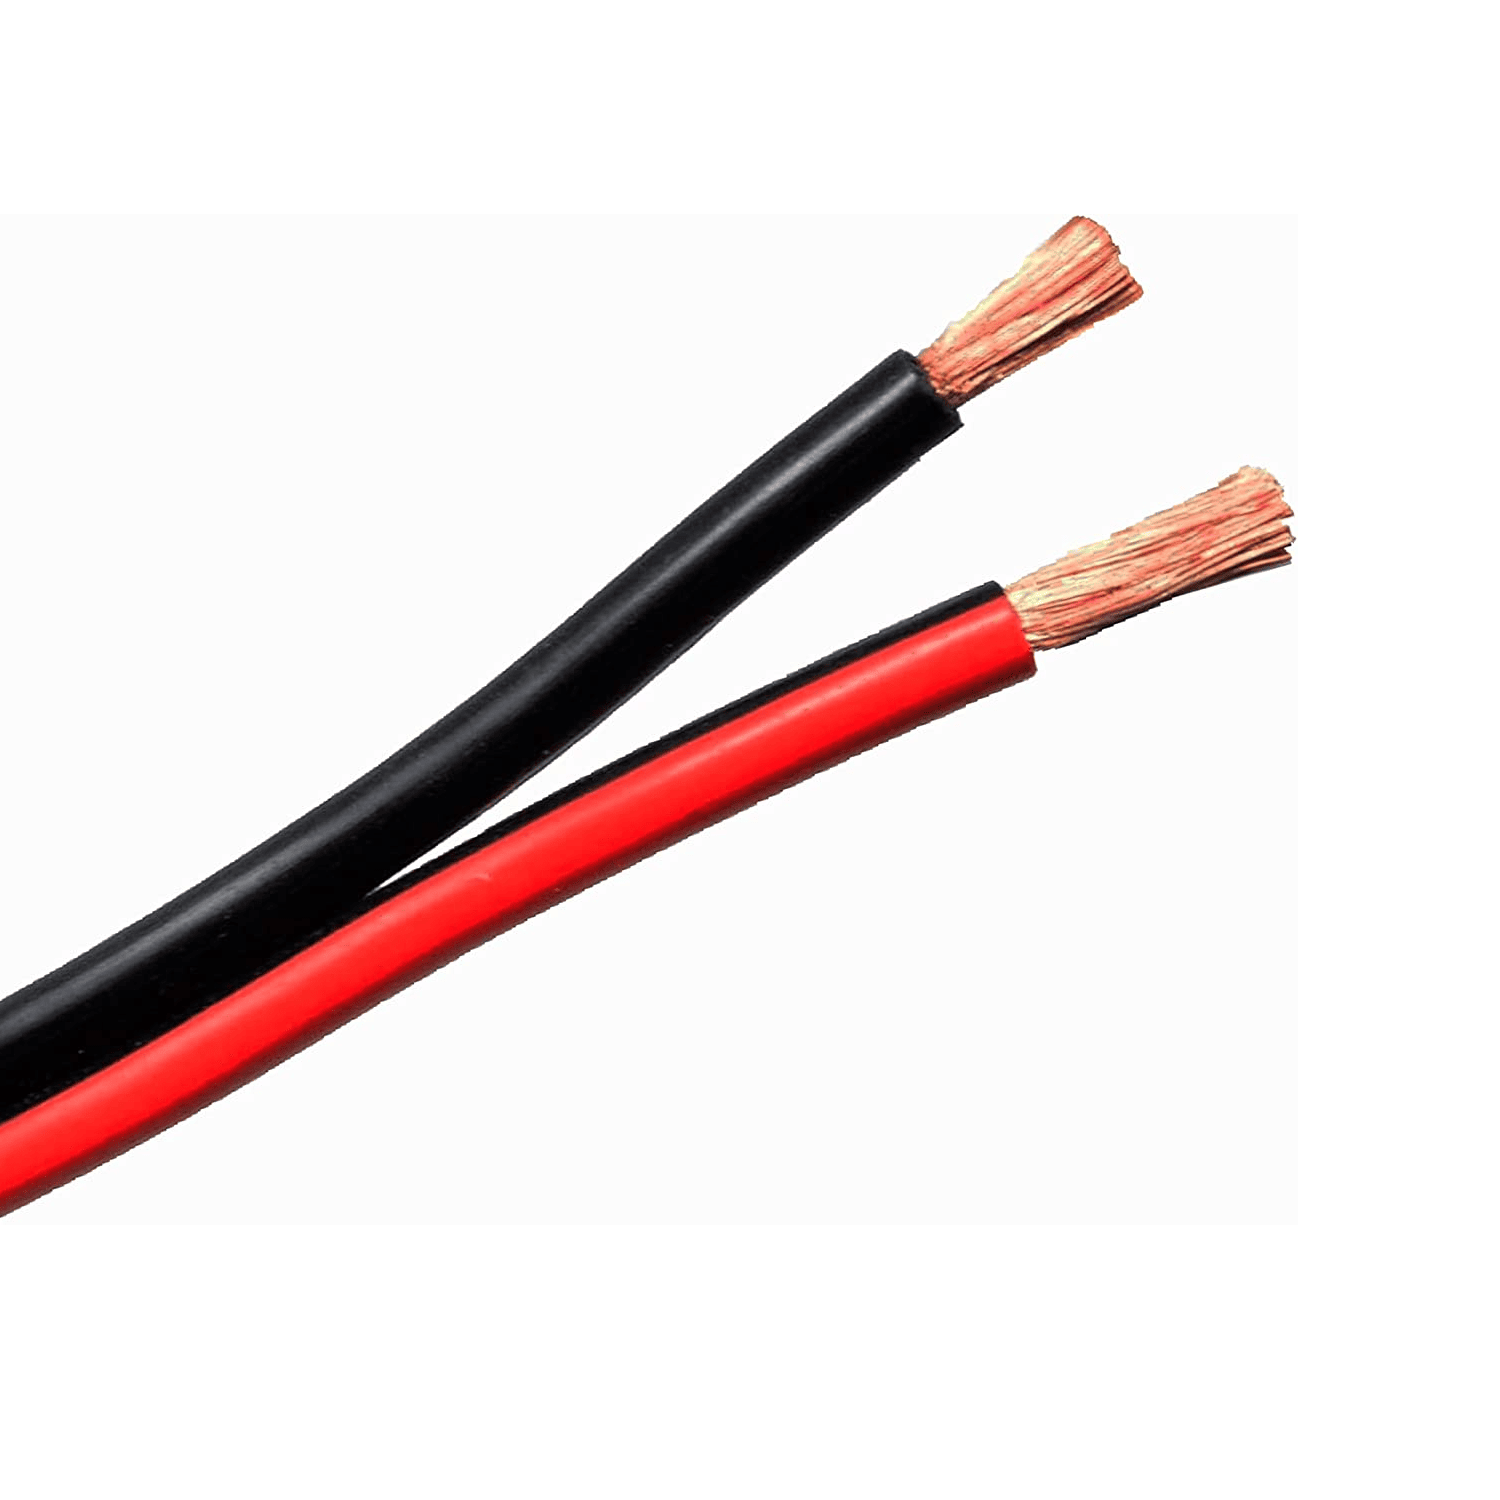 Cable para altavoces OEHLBACH 20533 – 3m, color negro y rojo – Shopavia